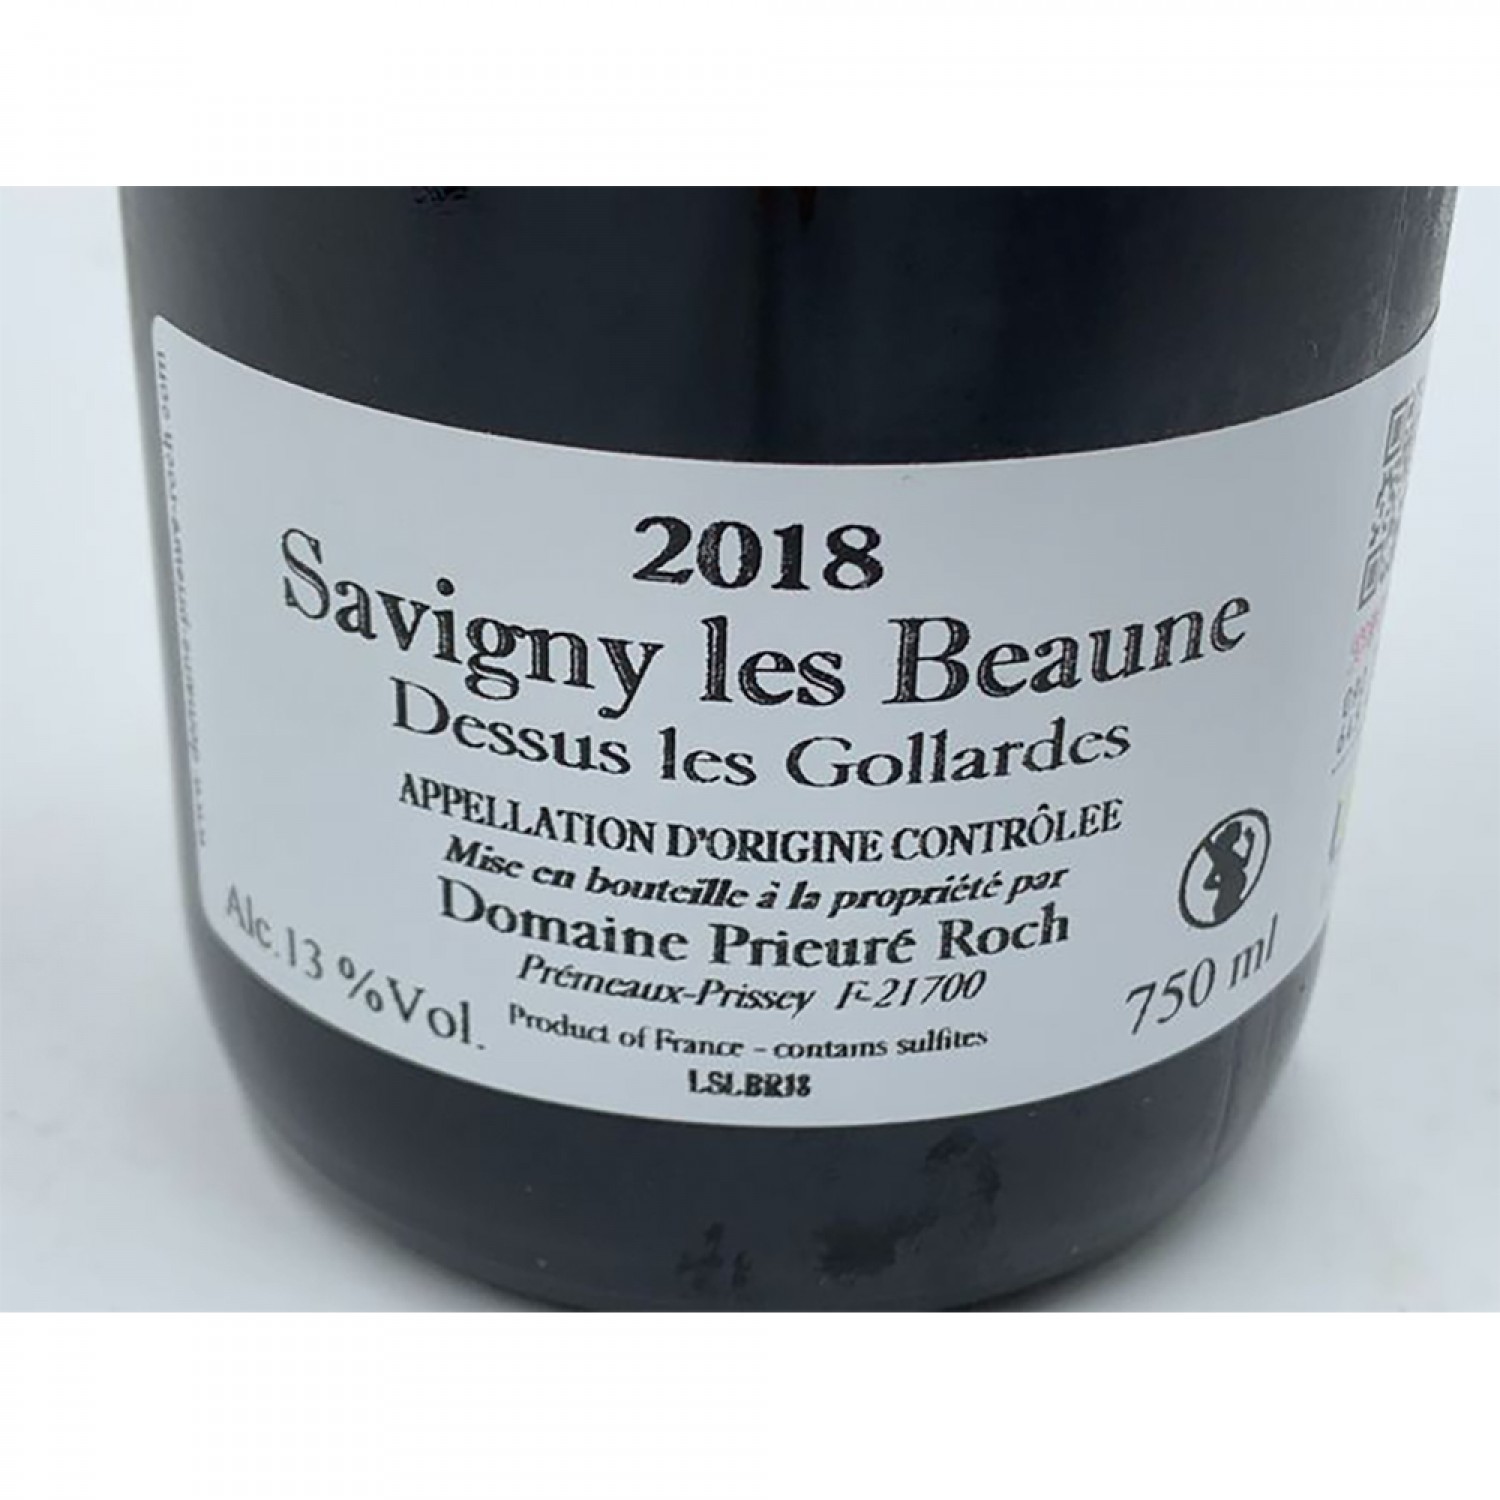 Domaine Prieure Roch Savigny-les-Beaune Dessus les Gollardes Rouge 2018, Burgundy 750ml